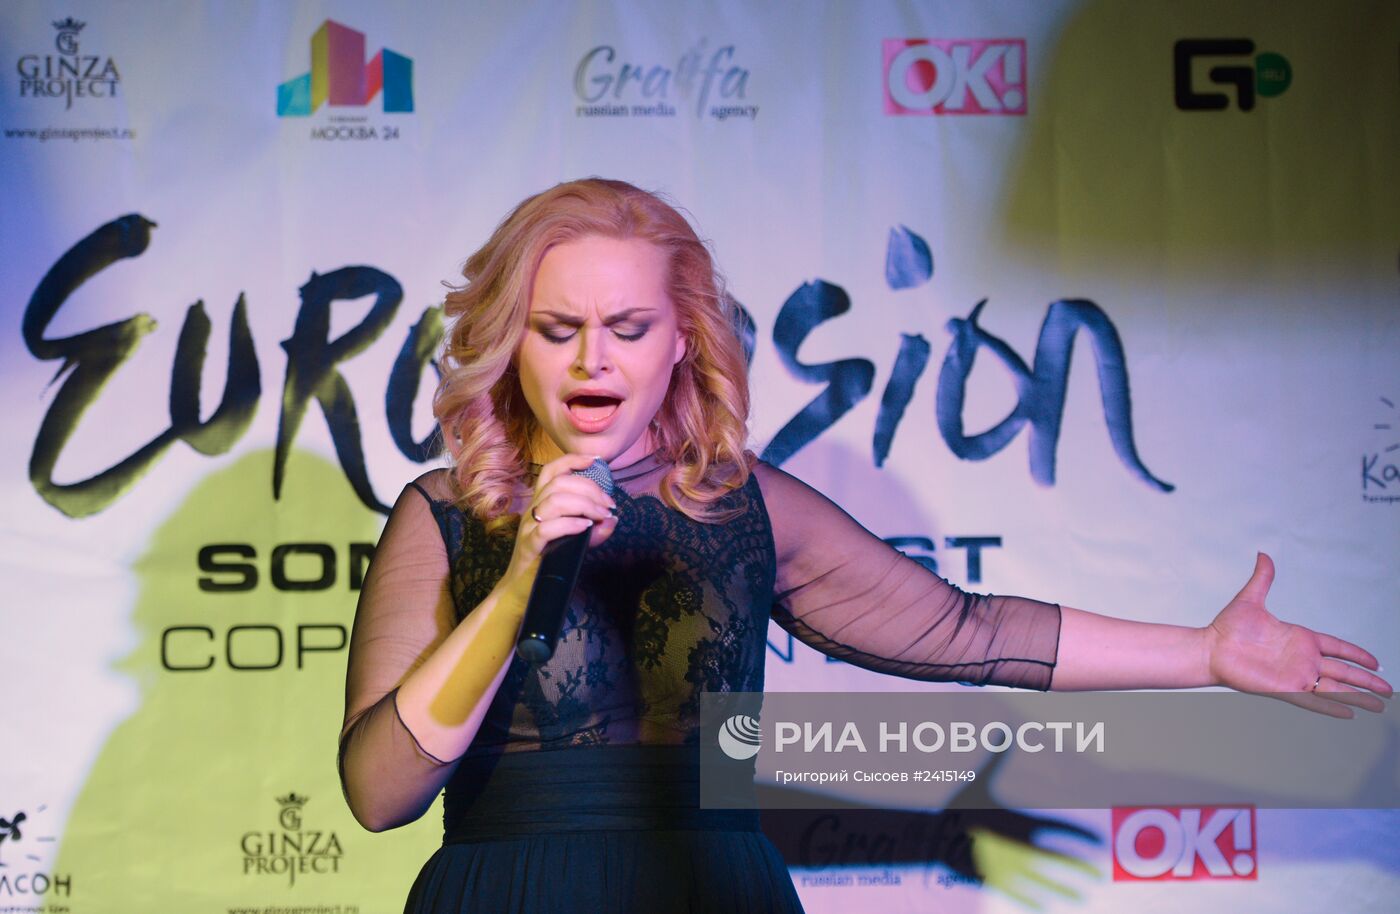 Российской pre-party международного песенного конкурса Eurovision